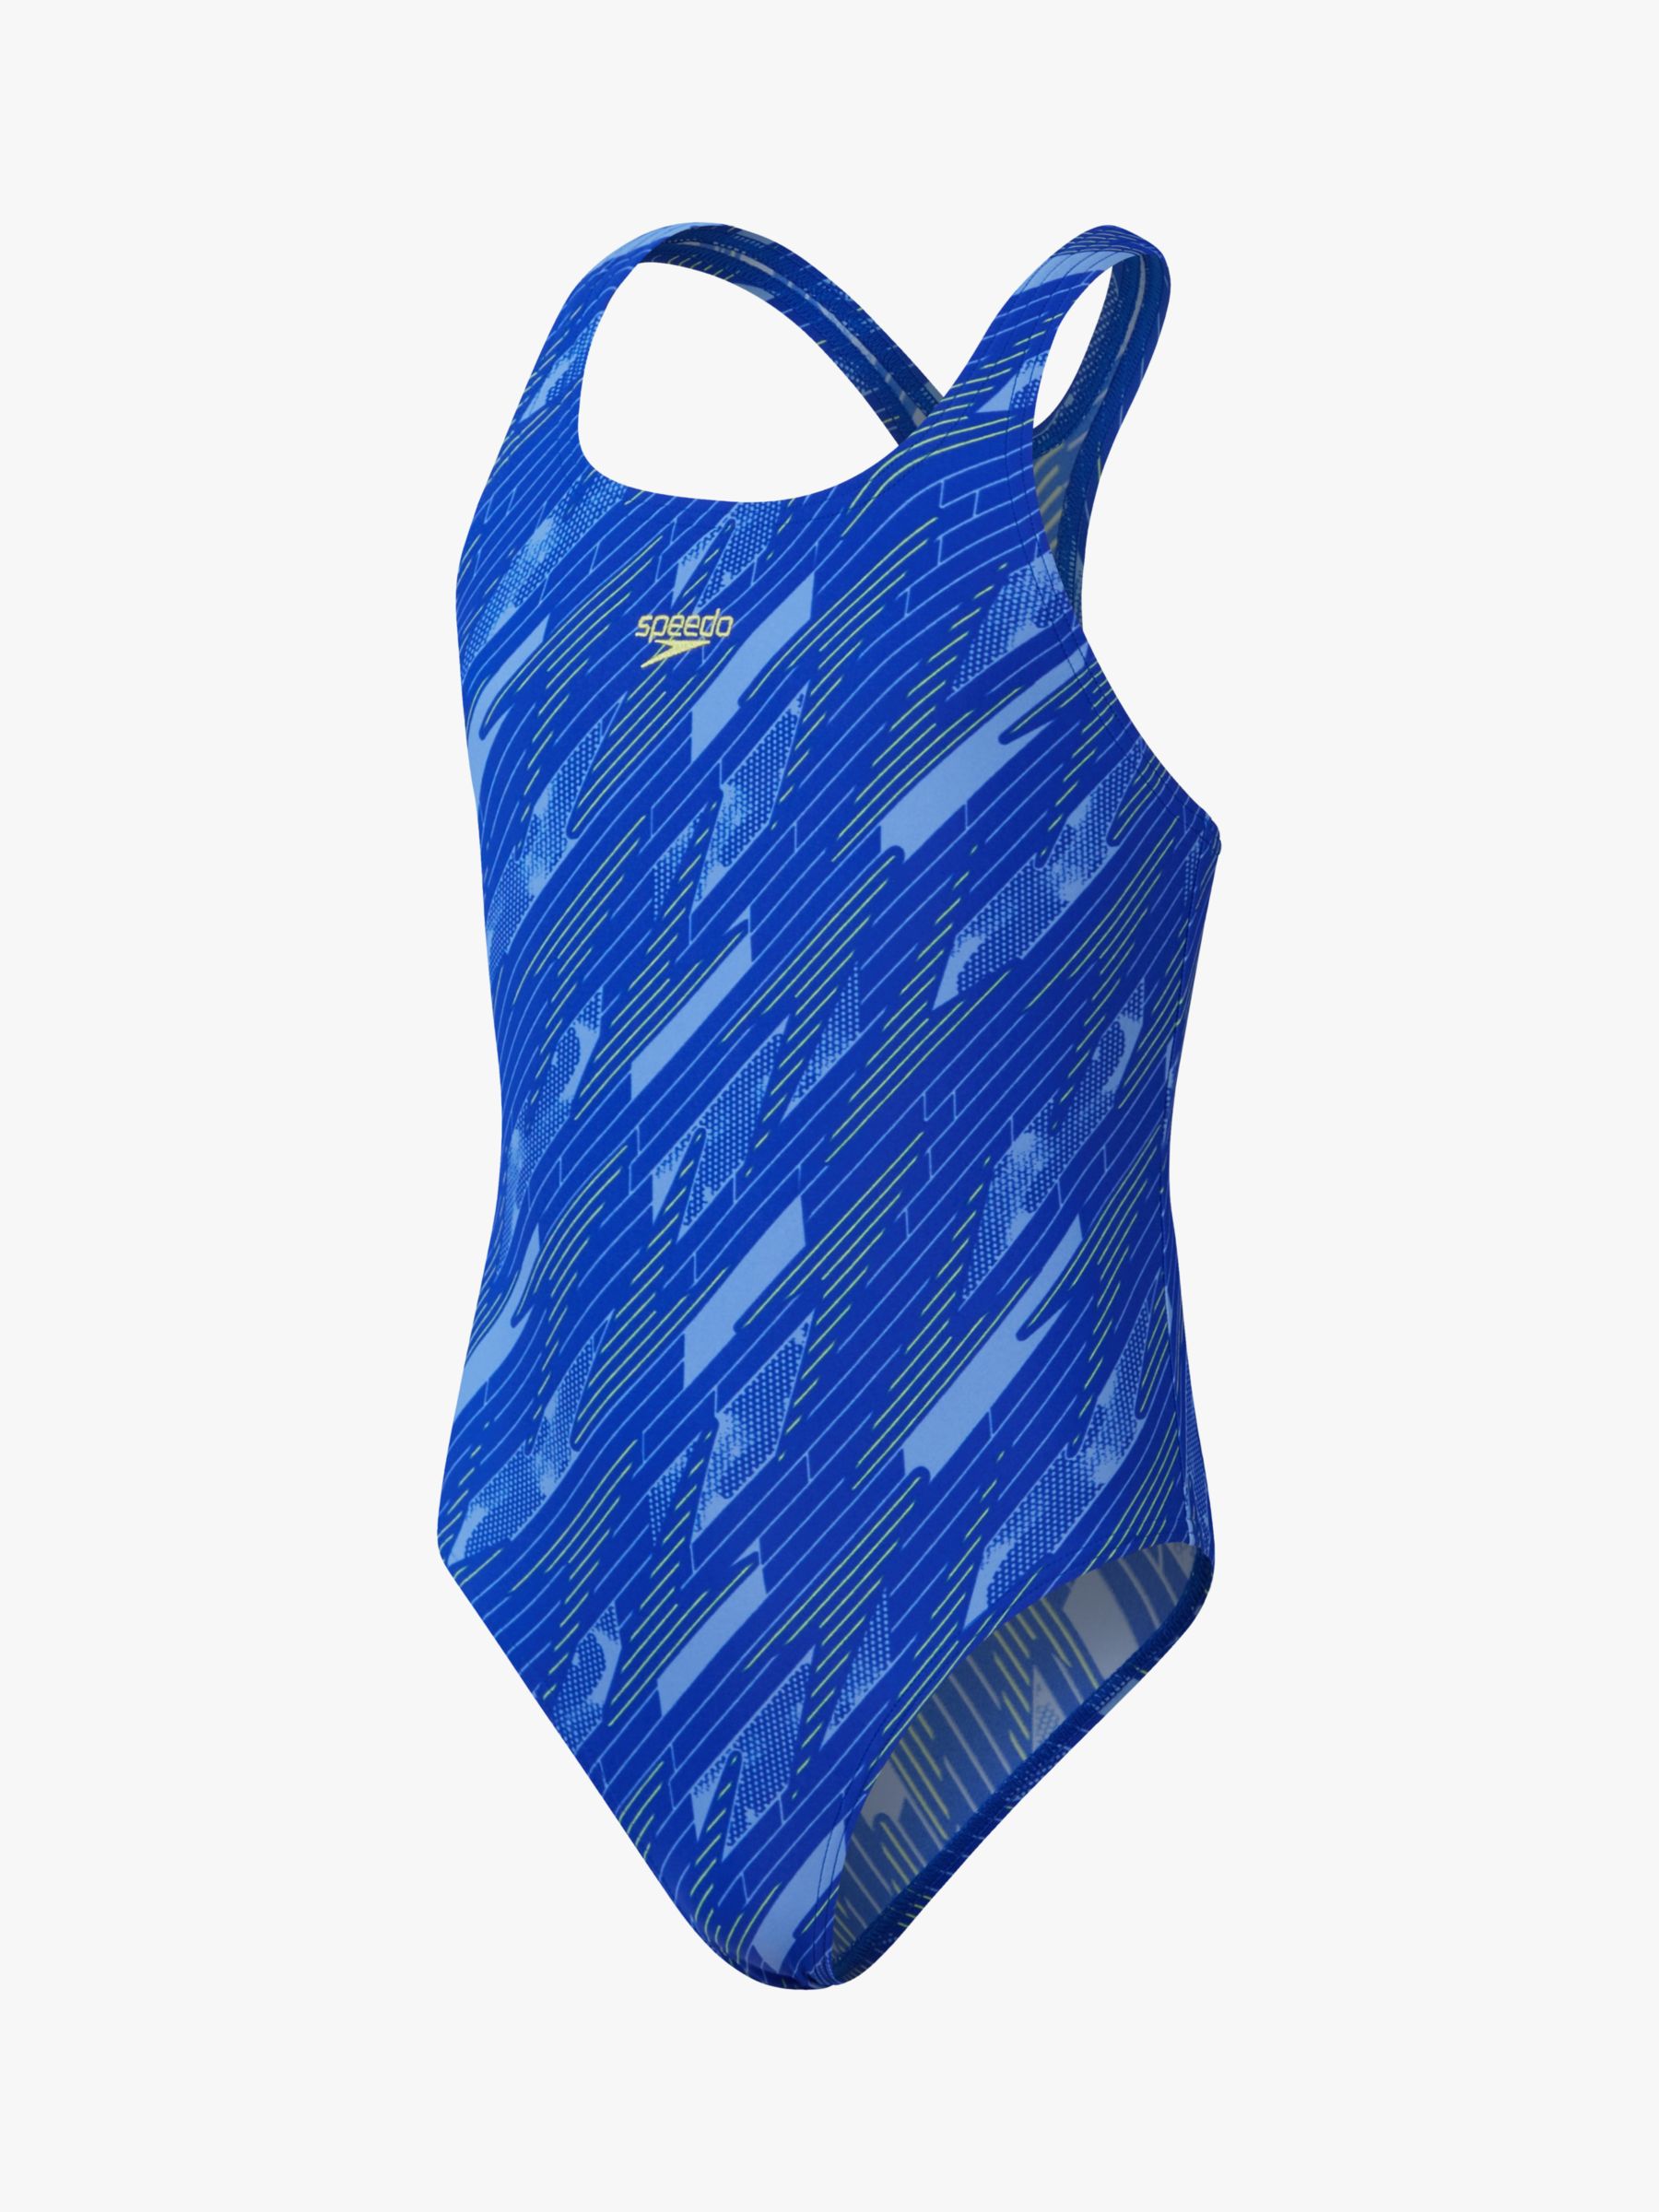 Speedo Kids' Hyperboom Graphic Medalist Swimsuit, Blue/Multi at John ...